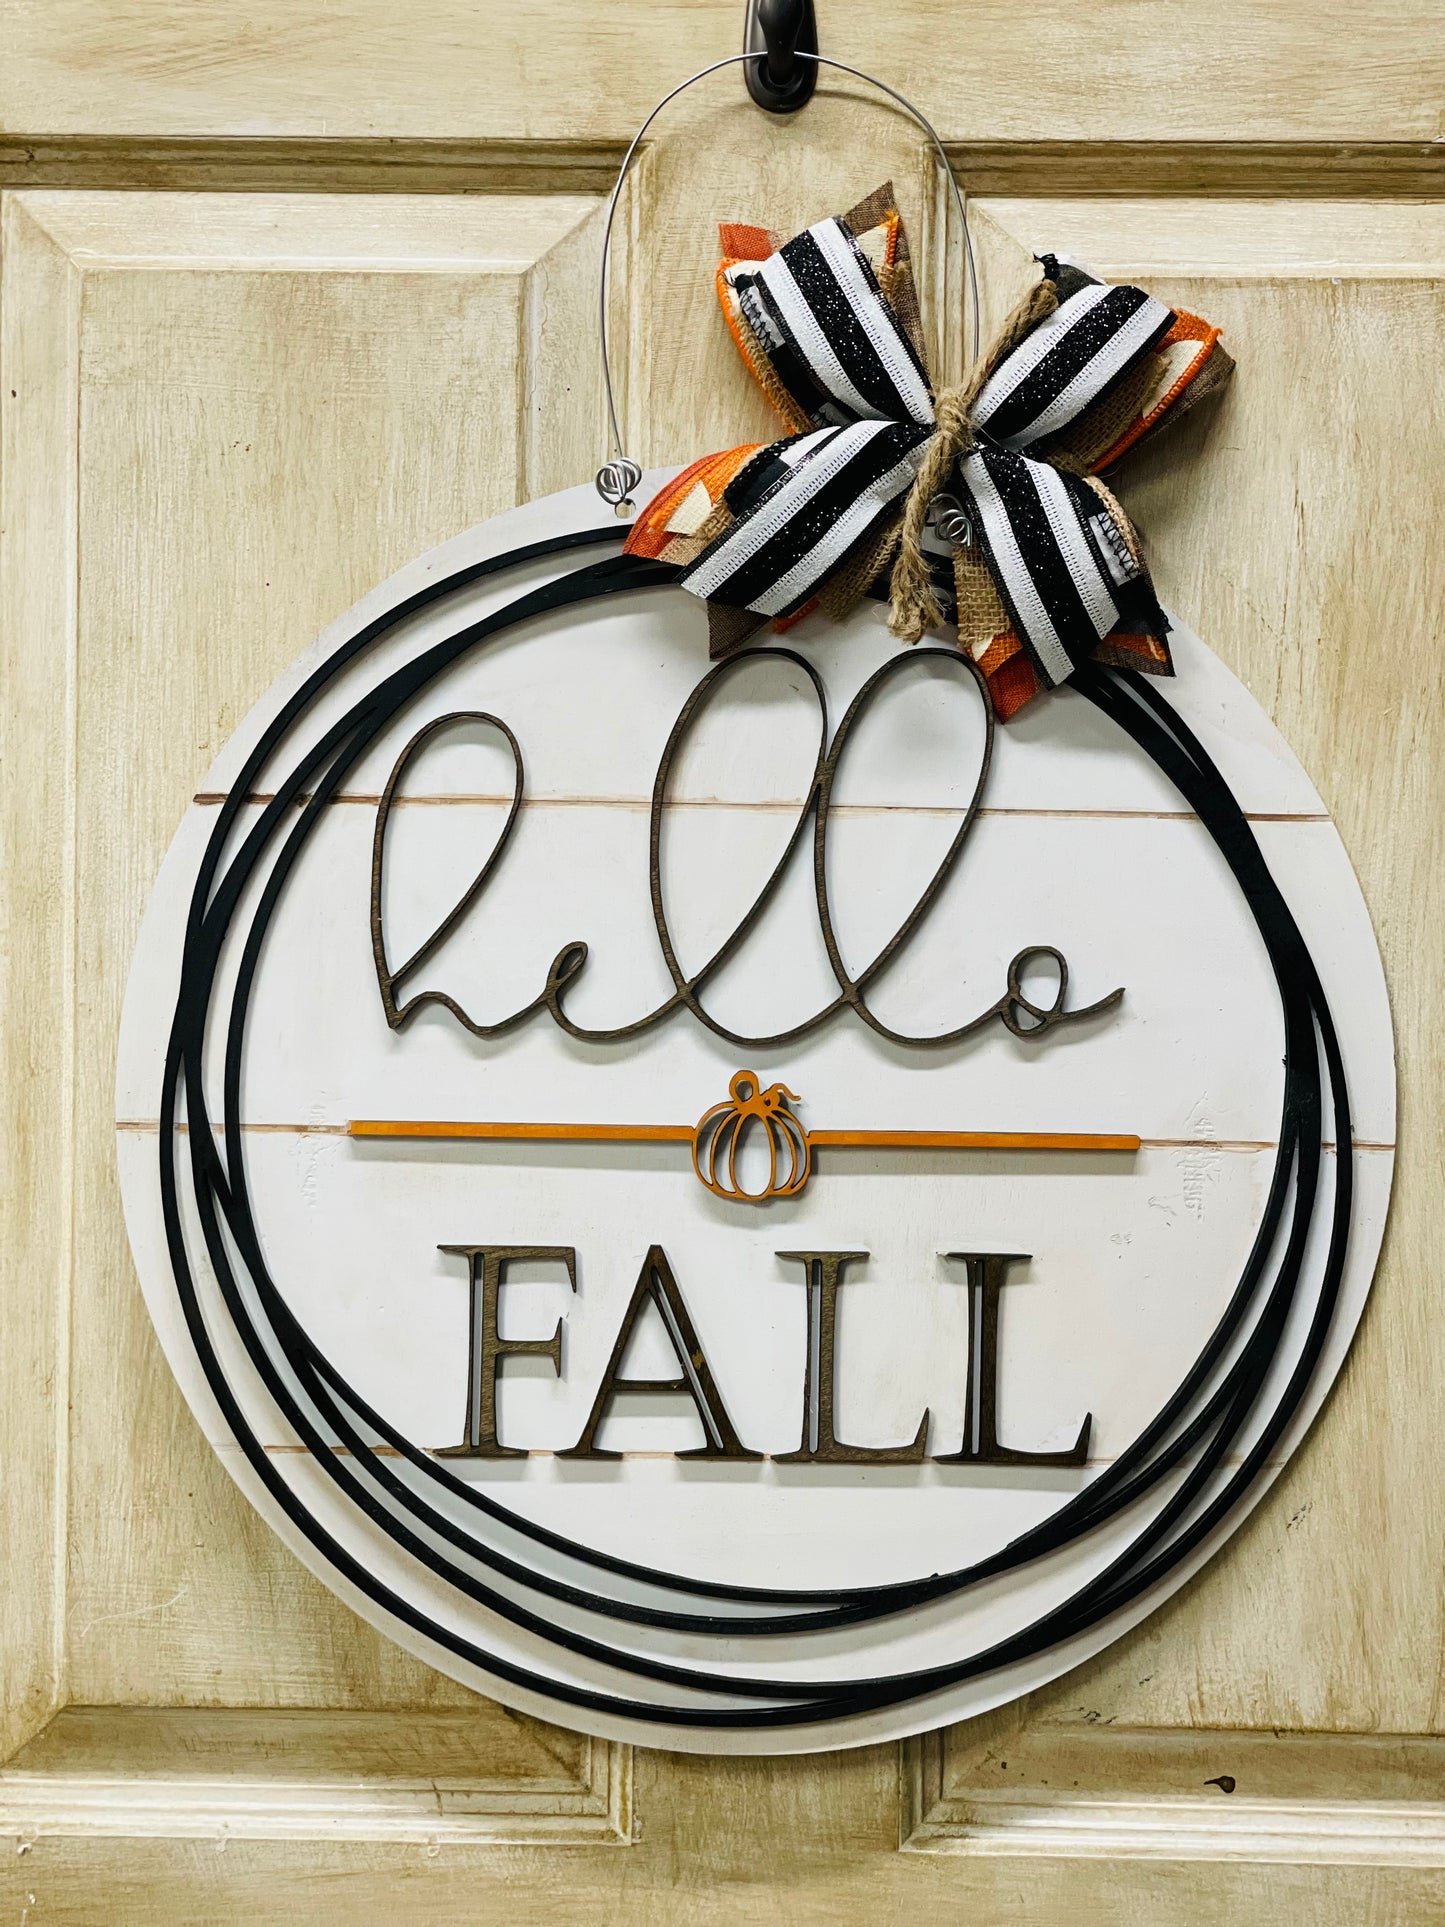 3D Hello Fall door sign - 3 designs